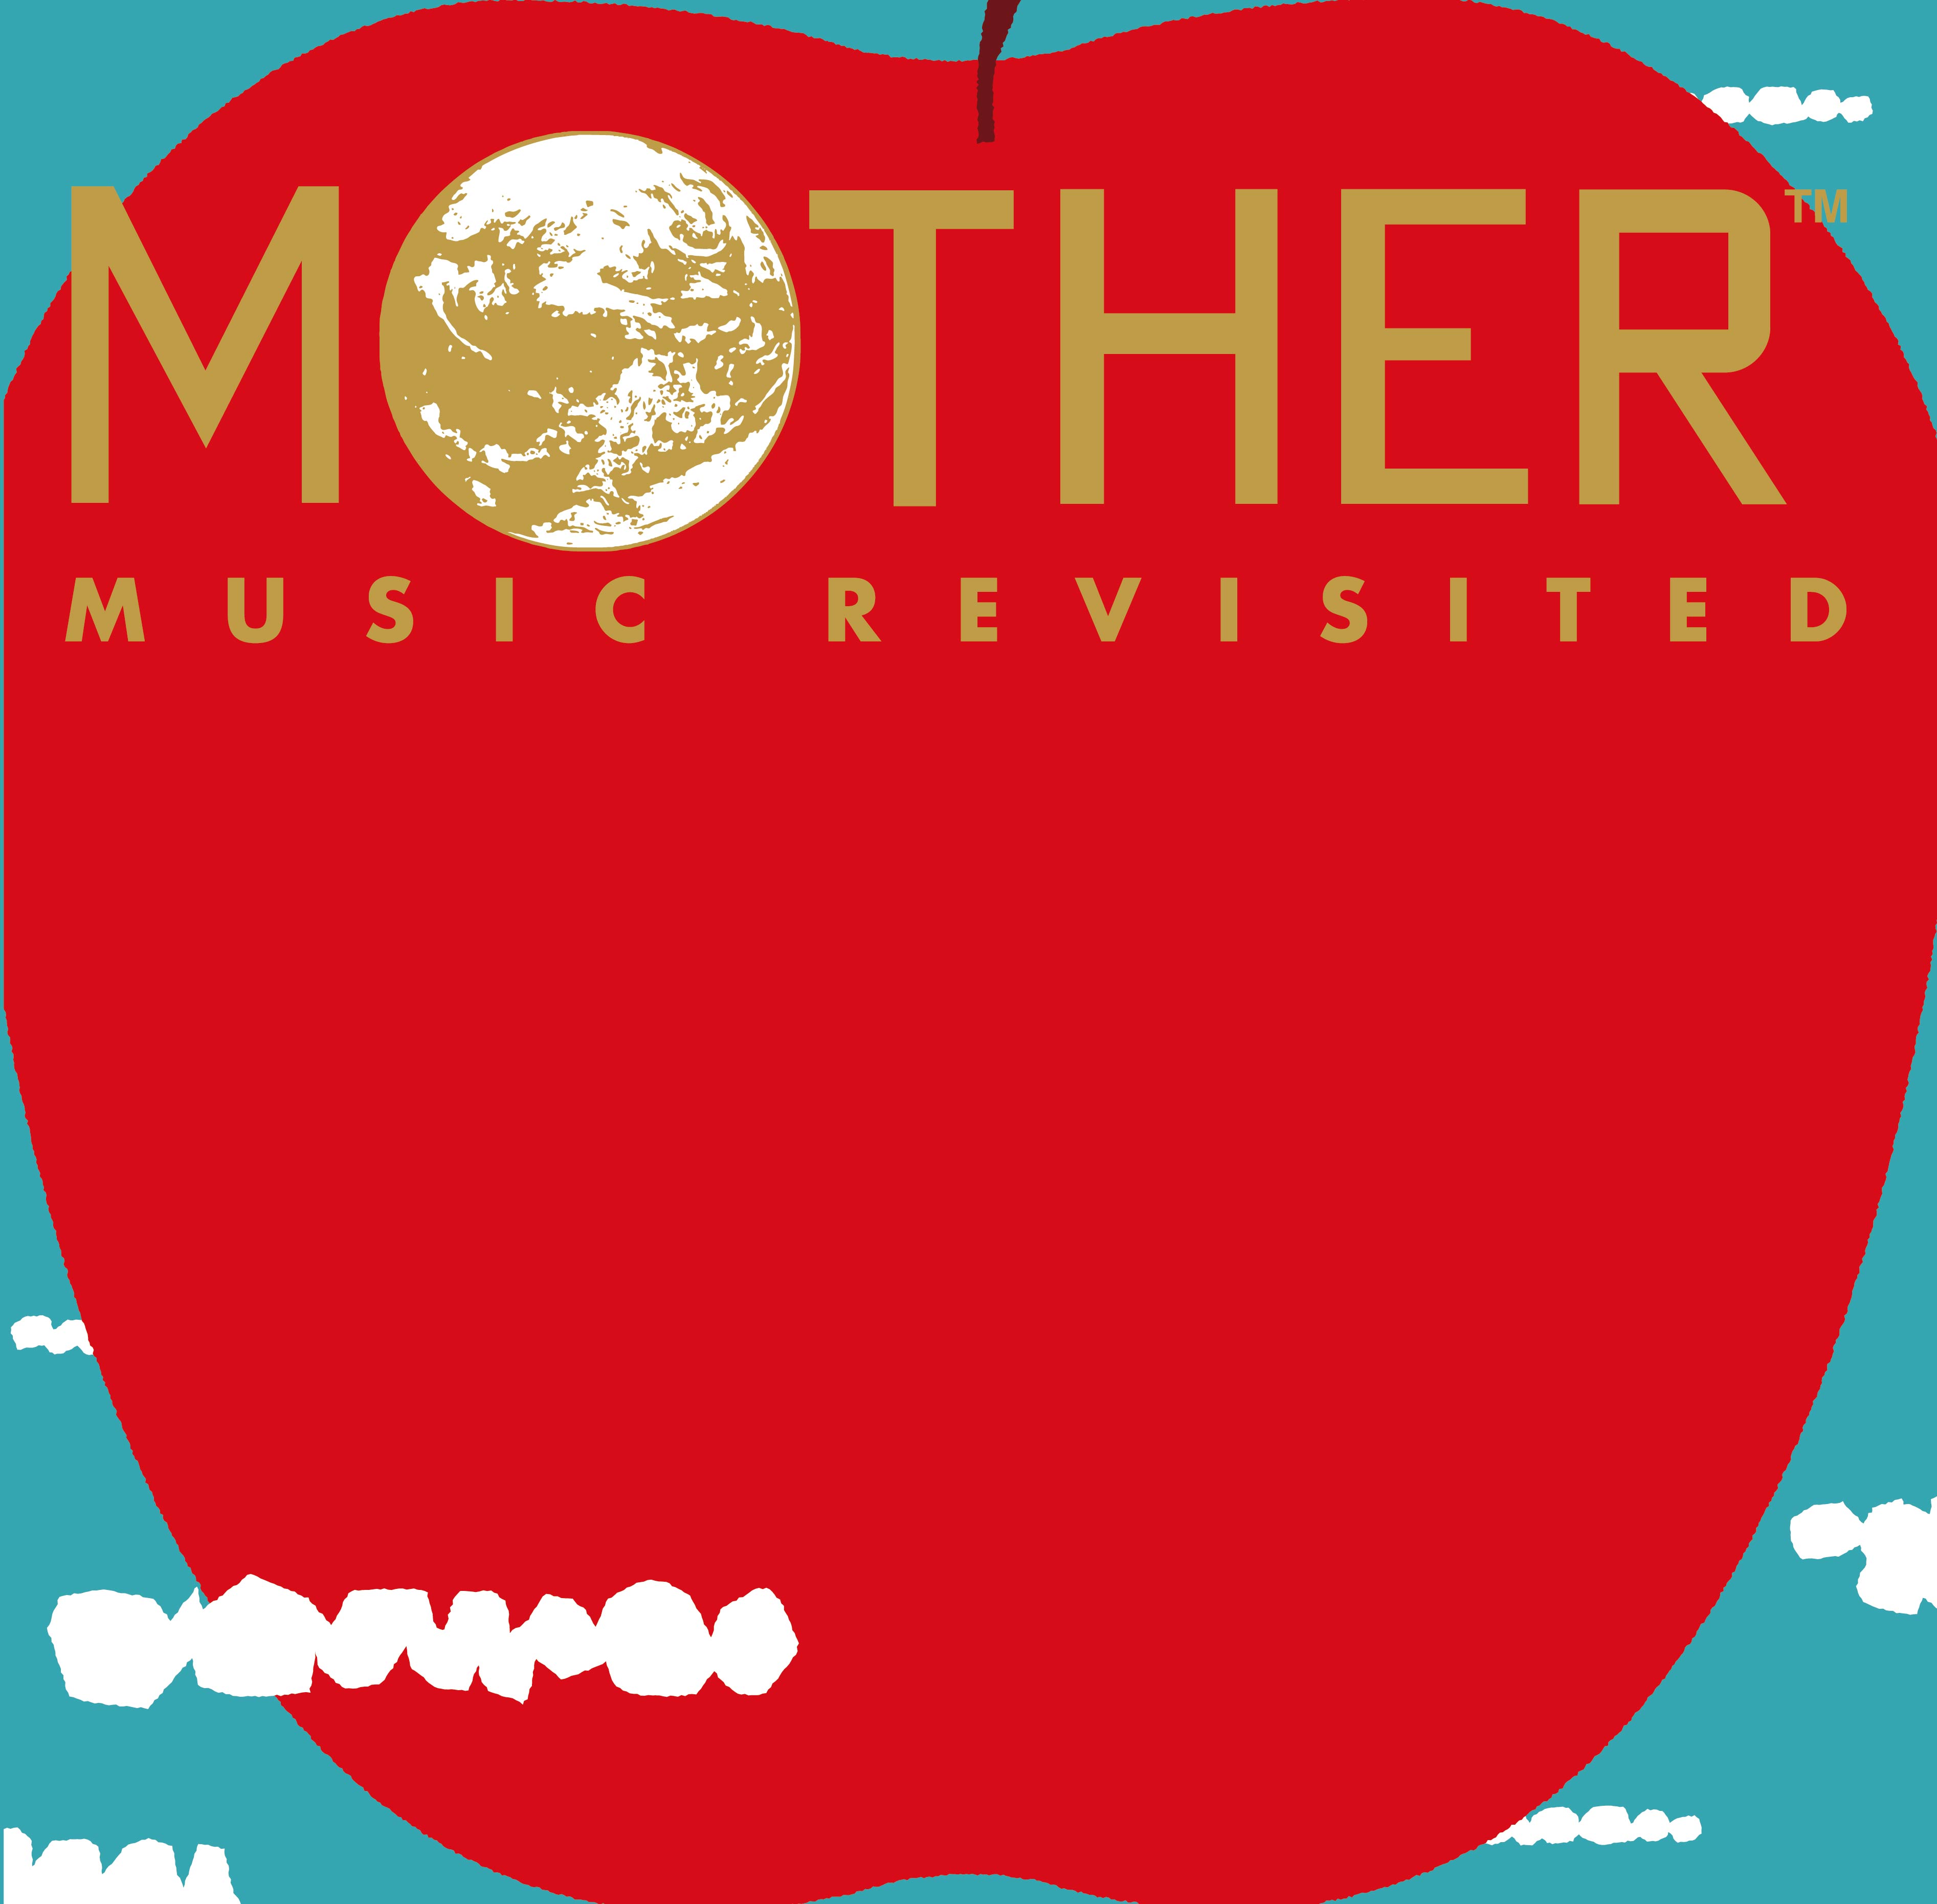 鈴木 慶一 不朽の名作ゲーム「MOTHER」新規サウンドトラック DISC2の